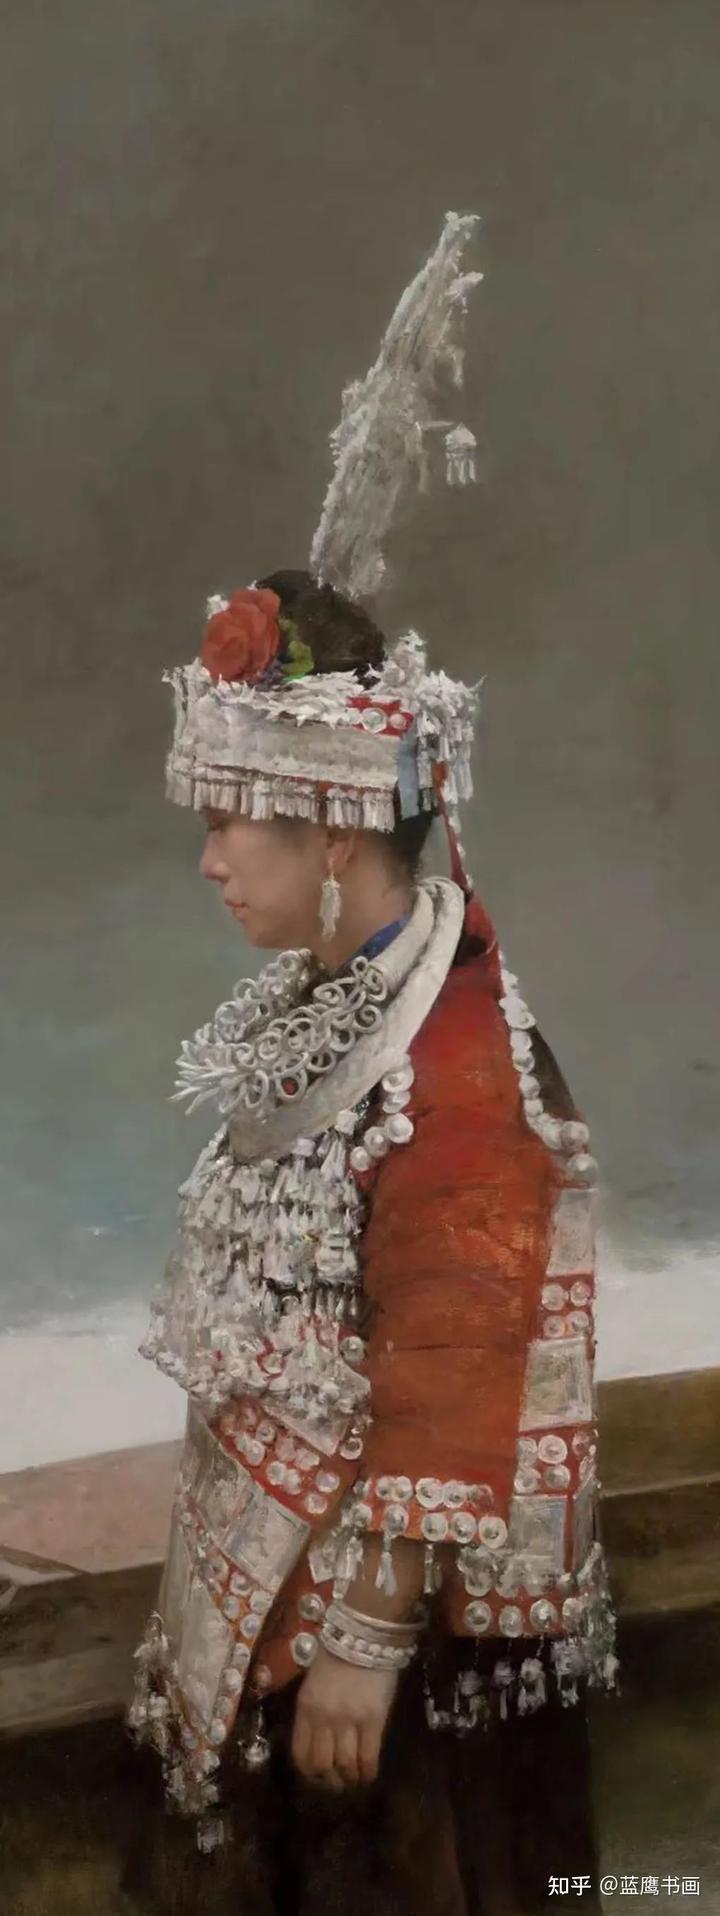 杨化喜创作的油画作品，展现了苗族少女的风情，获得了广泛关注